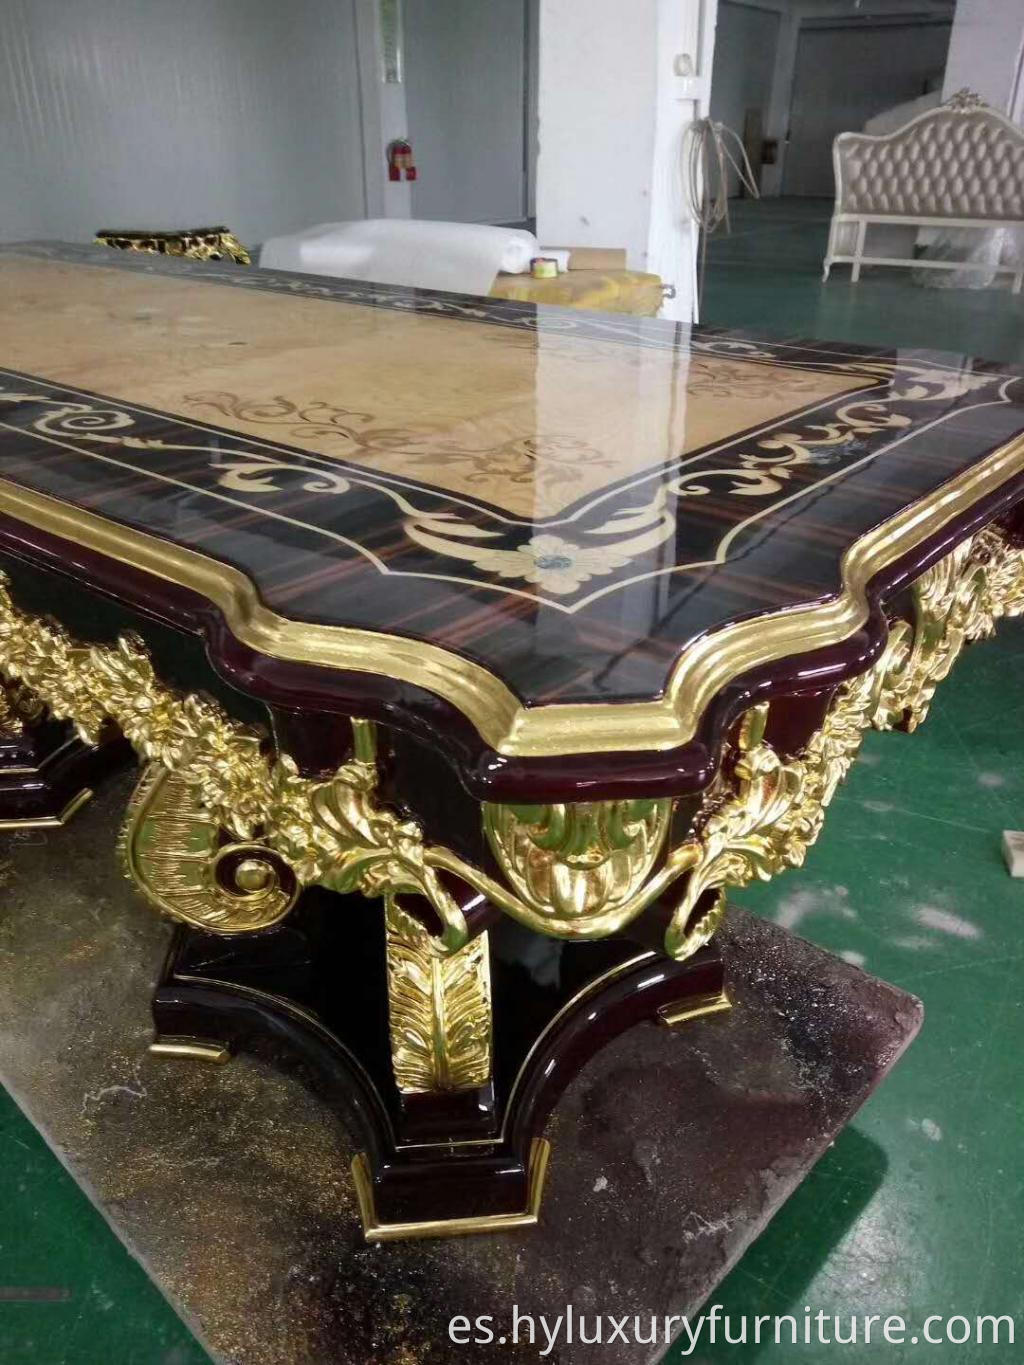 Mesa de comedor de muebles de madera de material de madera de lujo clásico en mesas de comedor en muebles de comedor de 8 plazas